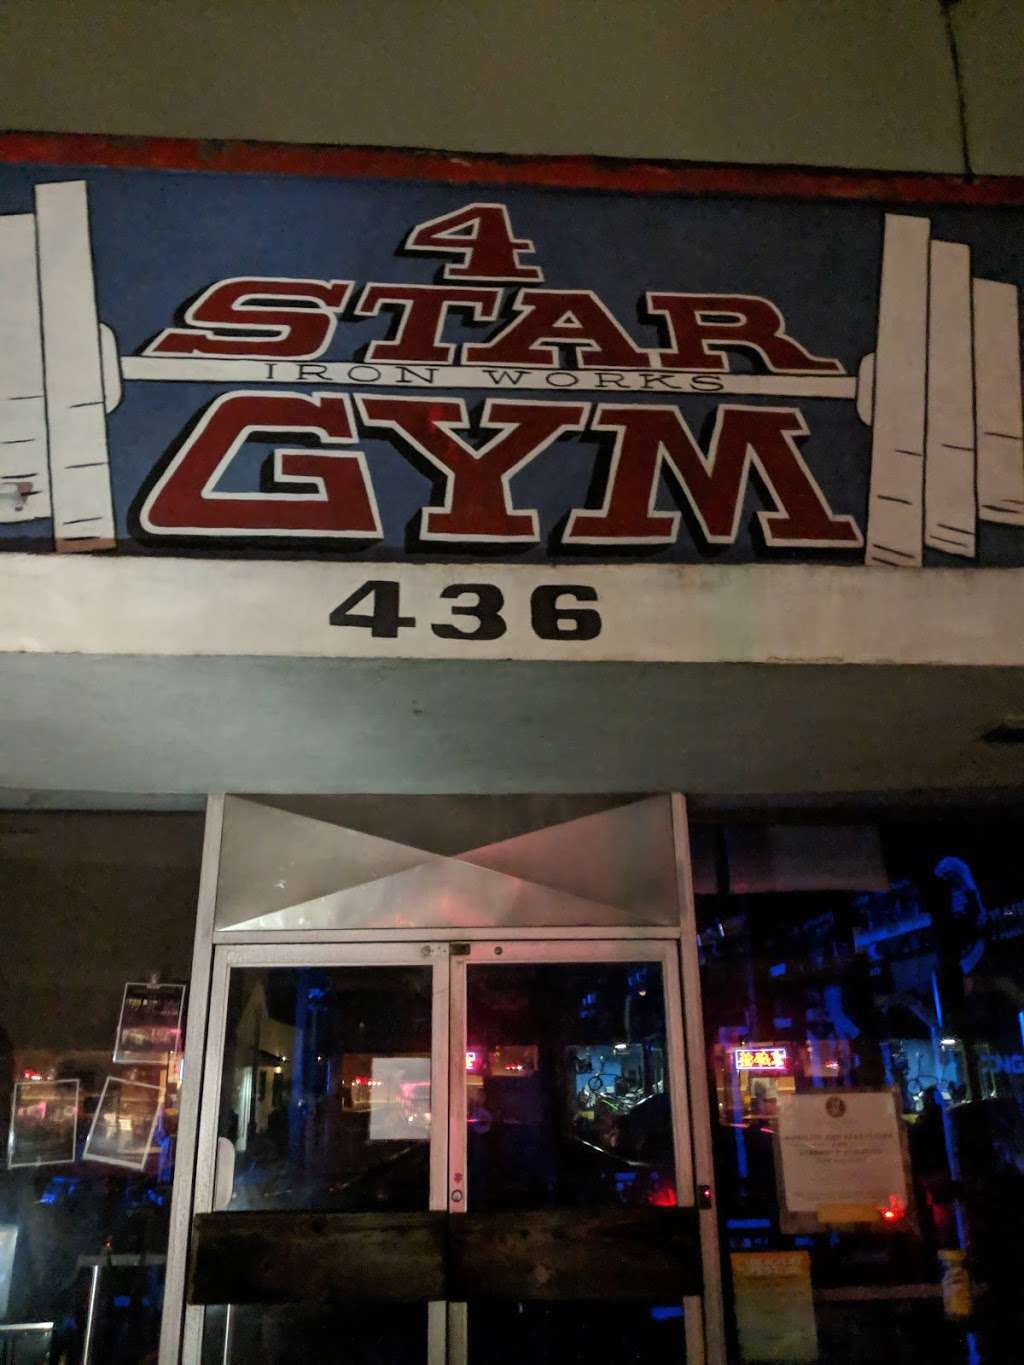 4 Star Gym | 436 Main St, El Segundo, CA 90245, USA | Phone: (562) 896-8612